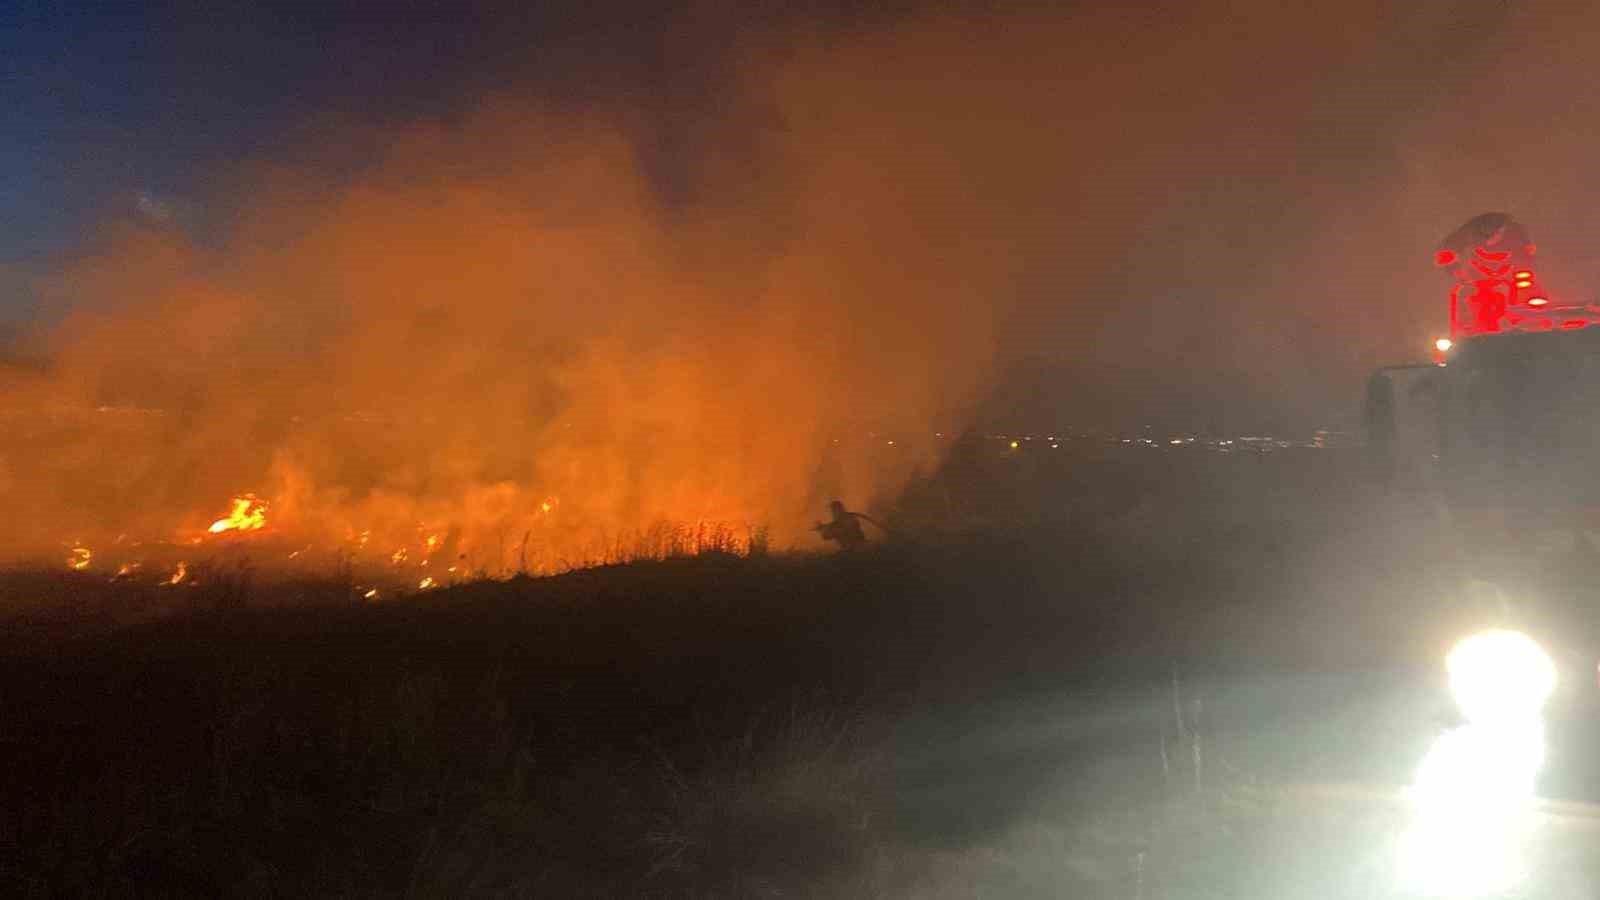 Erzincan’da örtü yangını itfaiyenin müdahalesiyle söndürüldü
